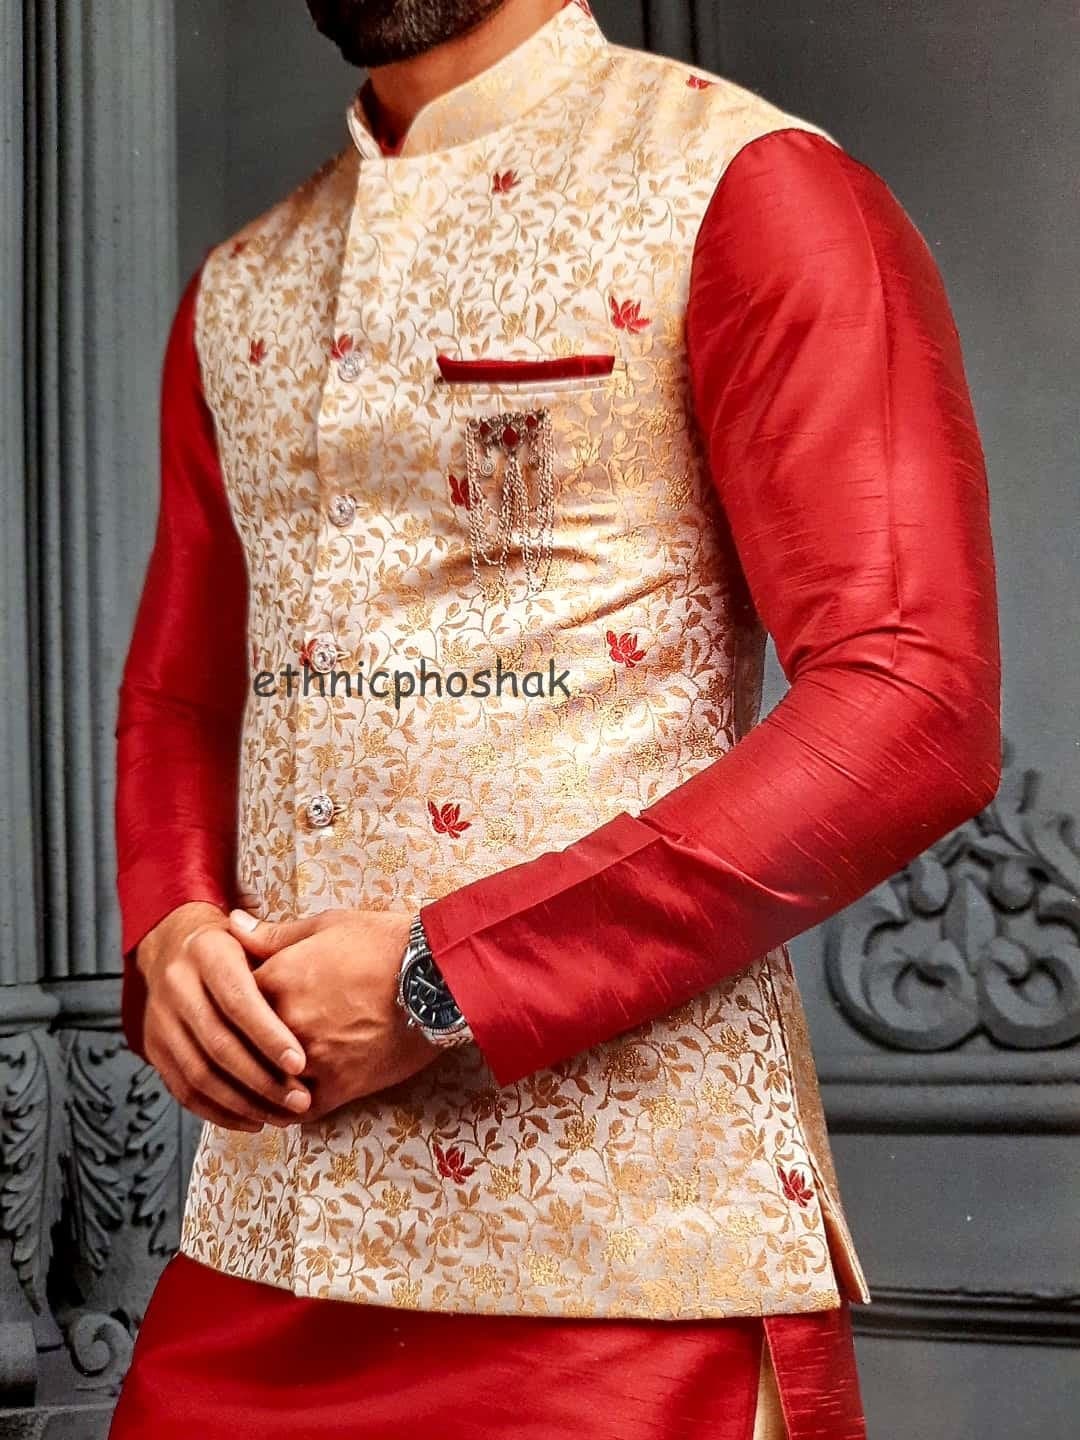 Nehru Jacket,Sherwani Clothing Mens Clothing Shirts & Tees Indian Designer Wedding Wear Men Kurta Pajama With Modi Jacket/ Nehru Jacket For Men Set of 3 Ethnic Phoshak for Men 